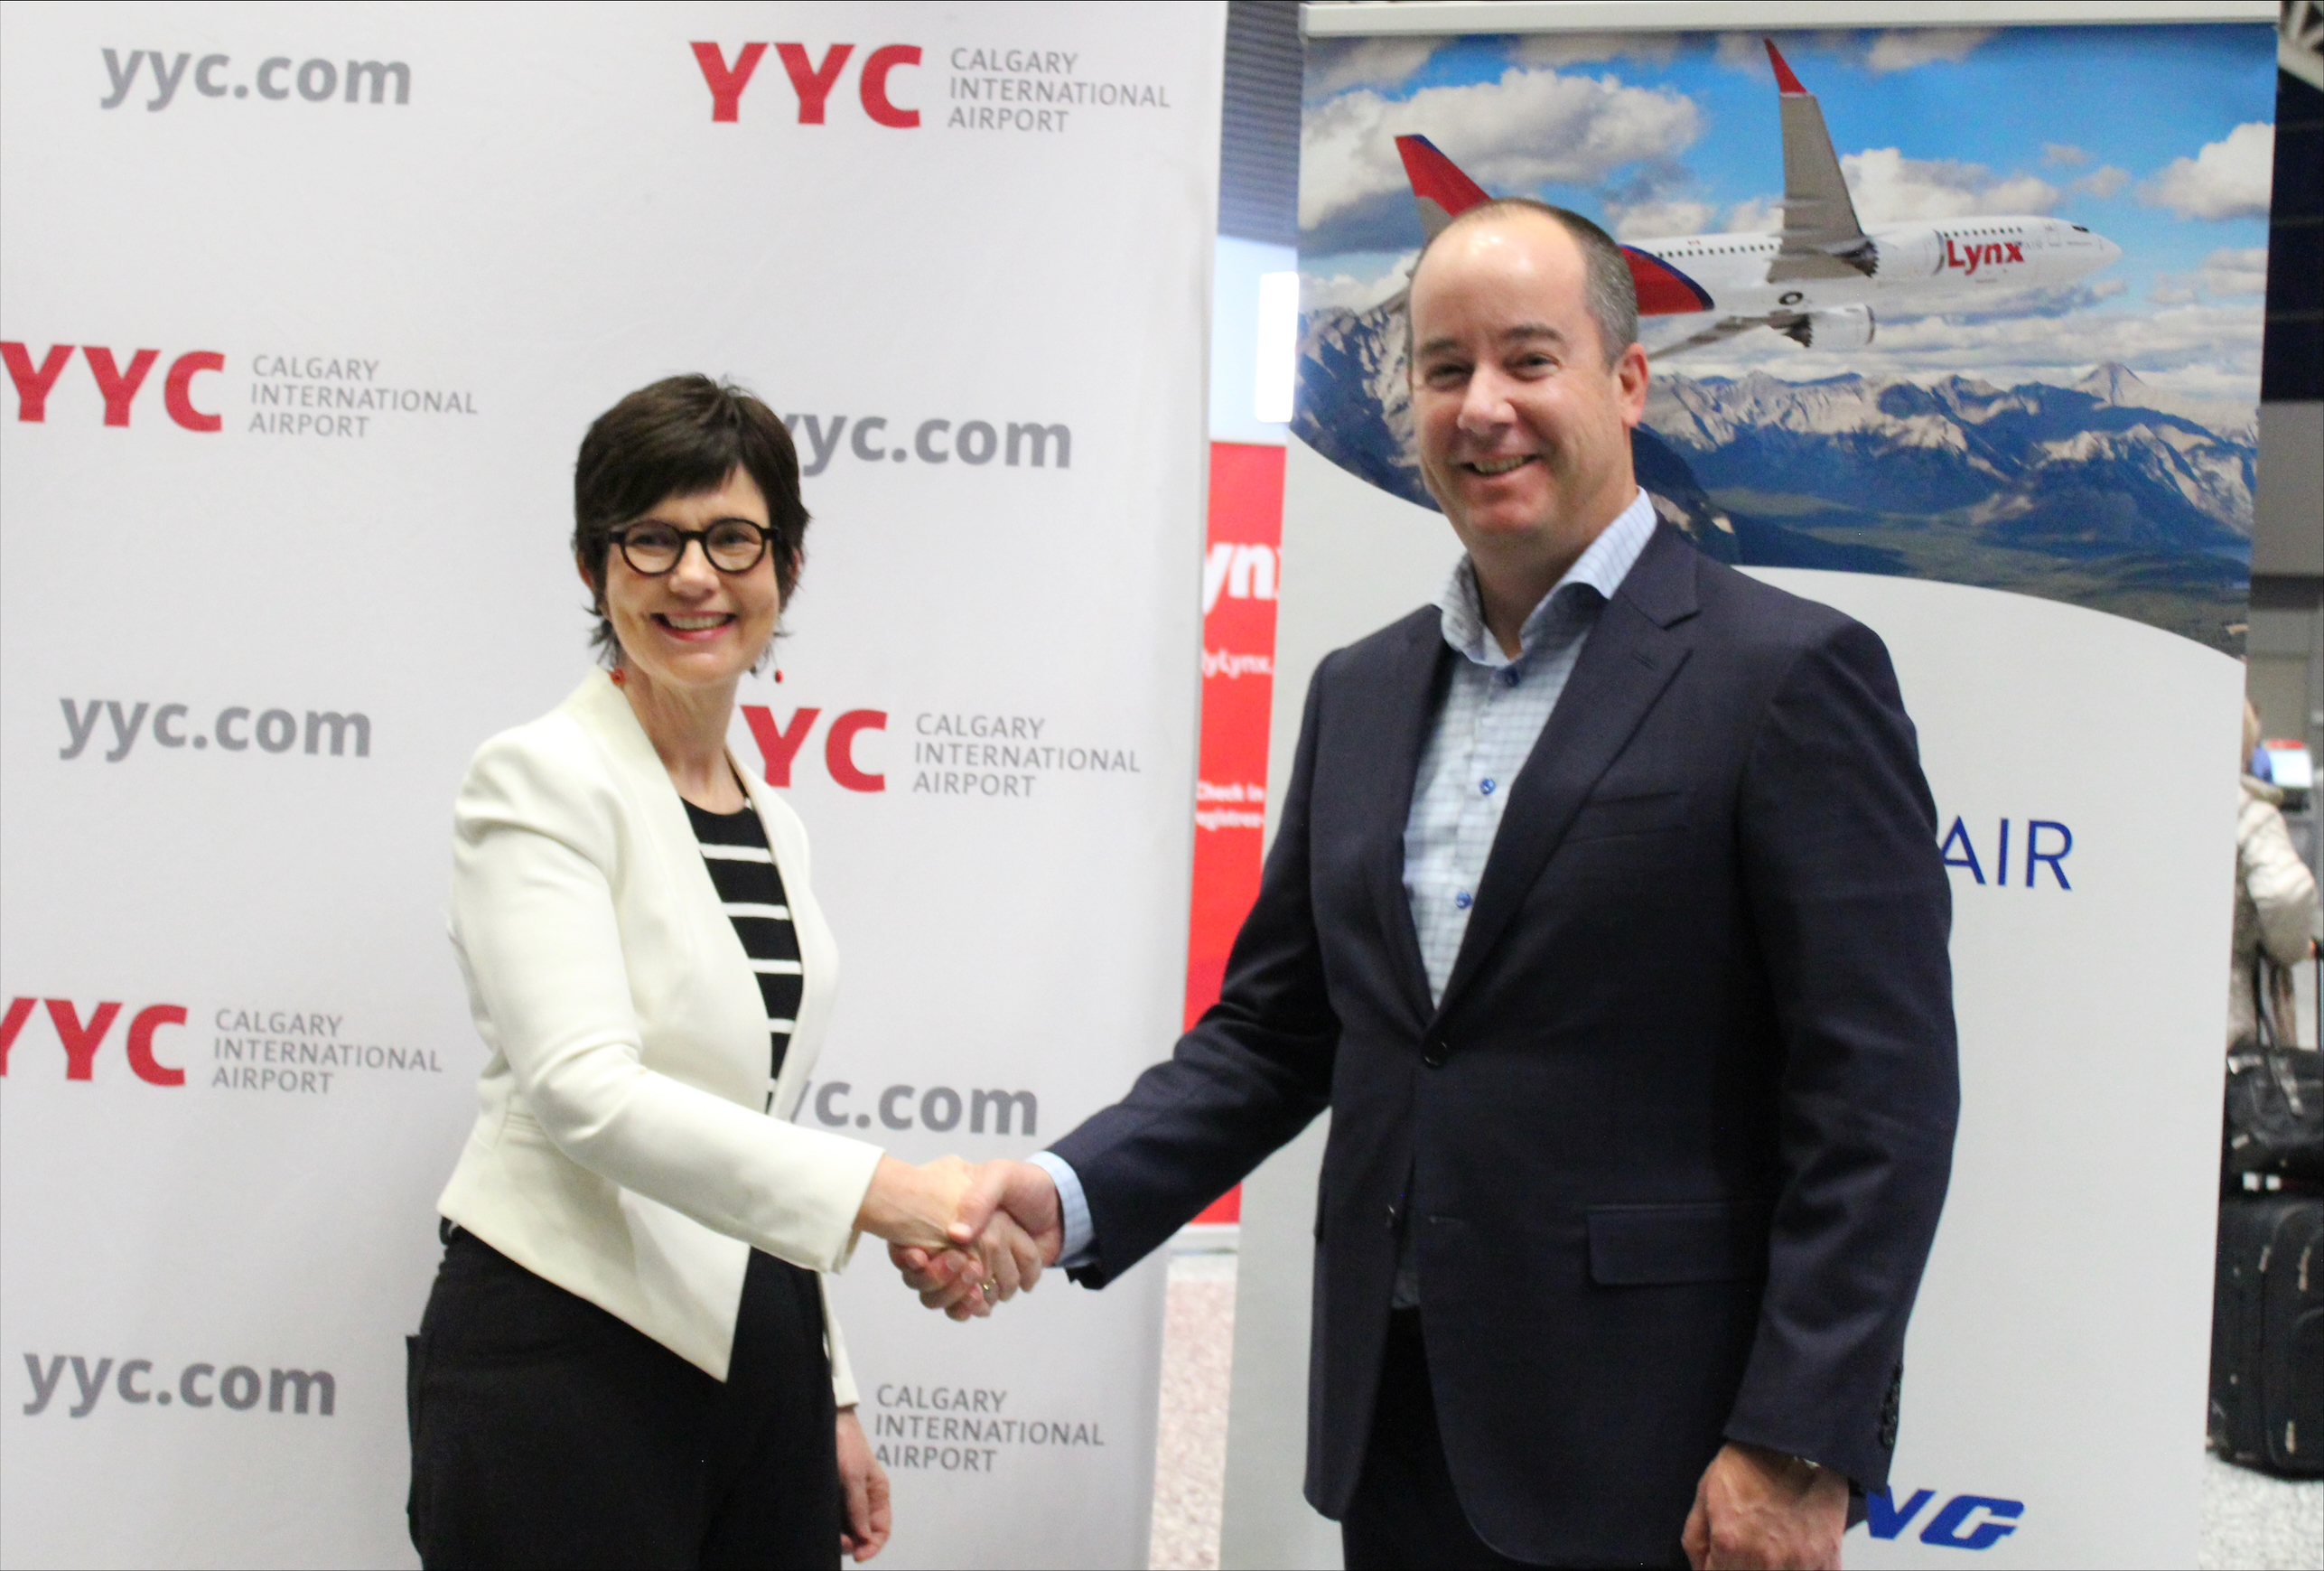 Chris Miles, vicepresidente de Operaciones e Infraestructura de la Autoridad Aeroportuaria de Calgary se une al CEO de Lynx Air, Merren McArthur, para celebrar el vuelo inaugural de US Lynx Air desde el Aeropuerto Internacional de Calgary.